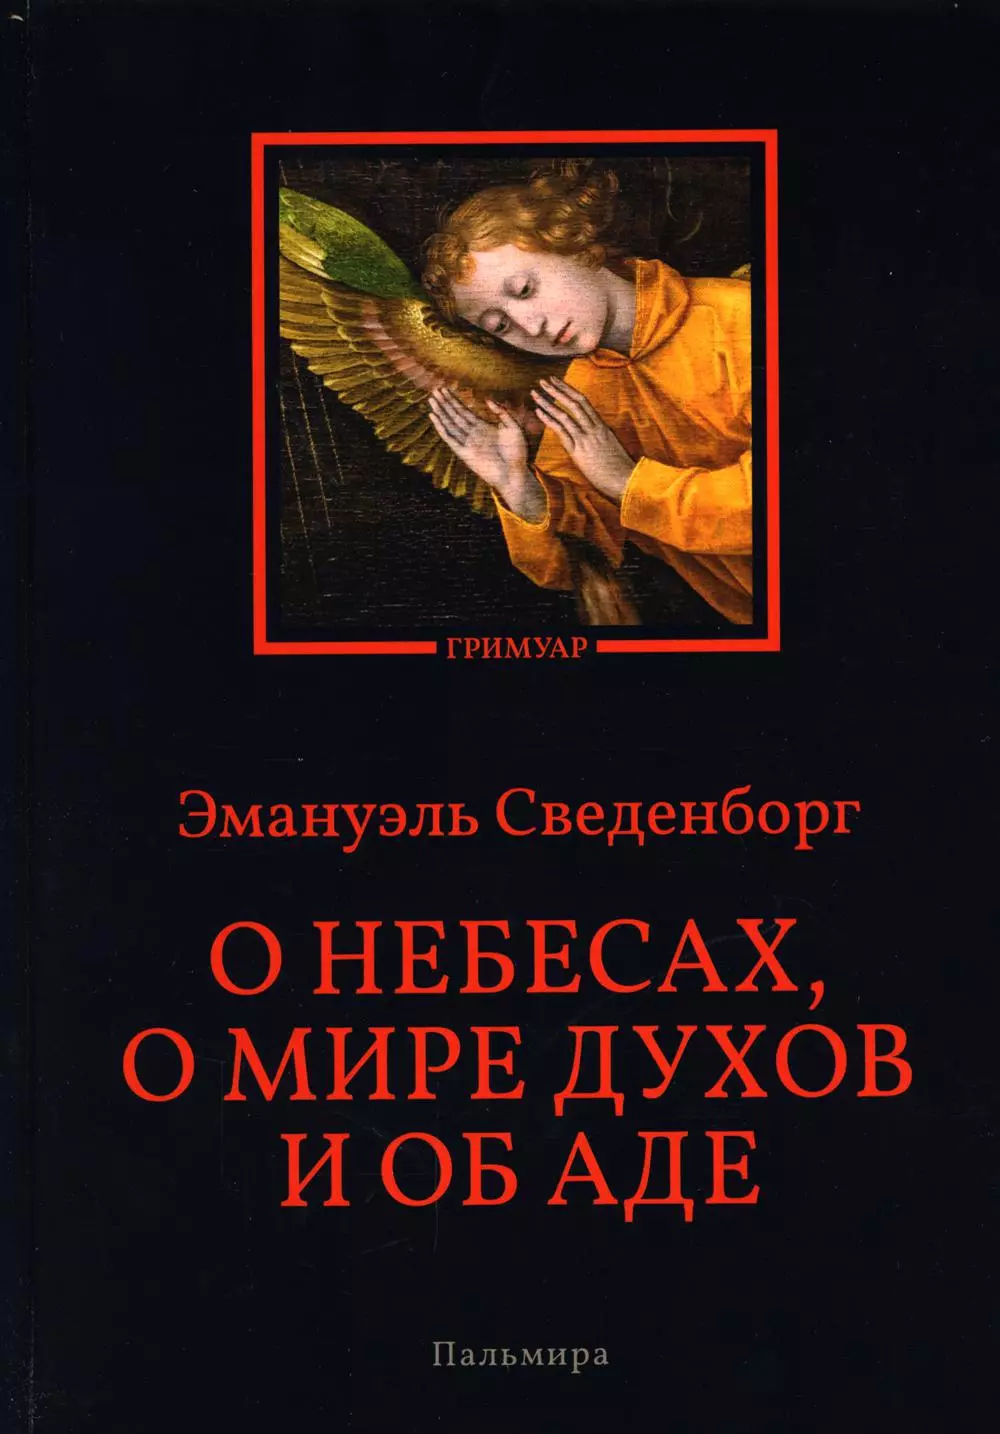 Сведенборг Эммануэль - О небесах, о мире духов и об аде